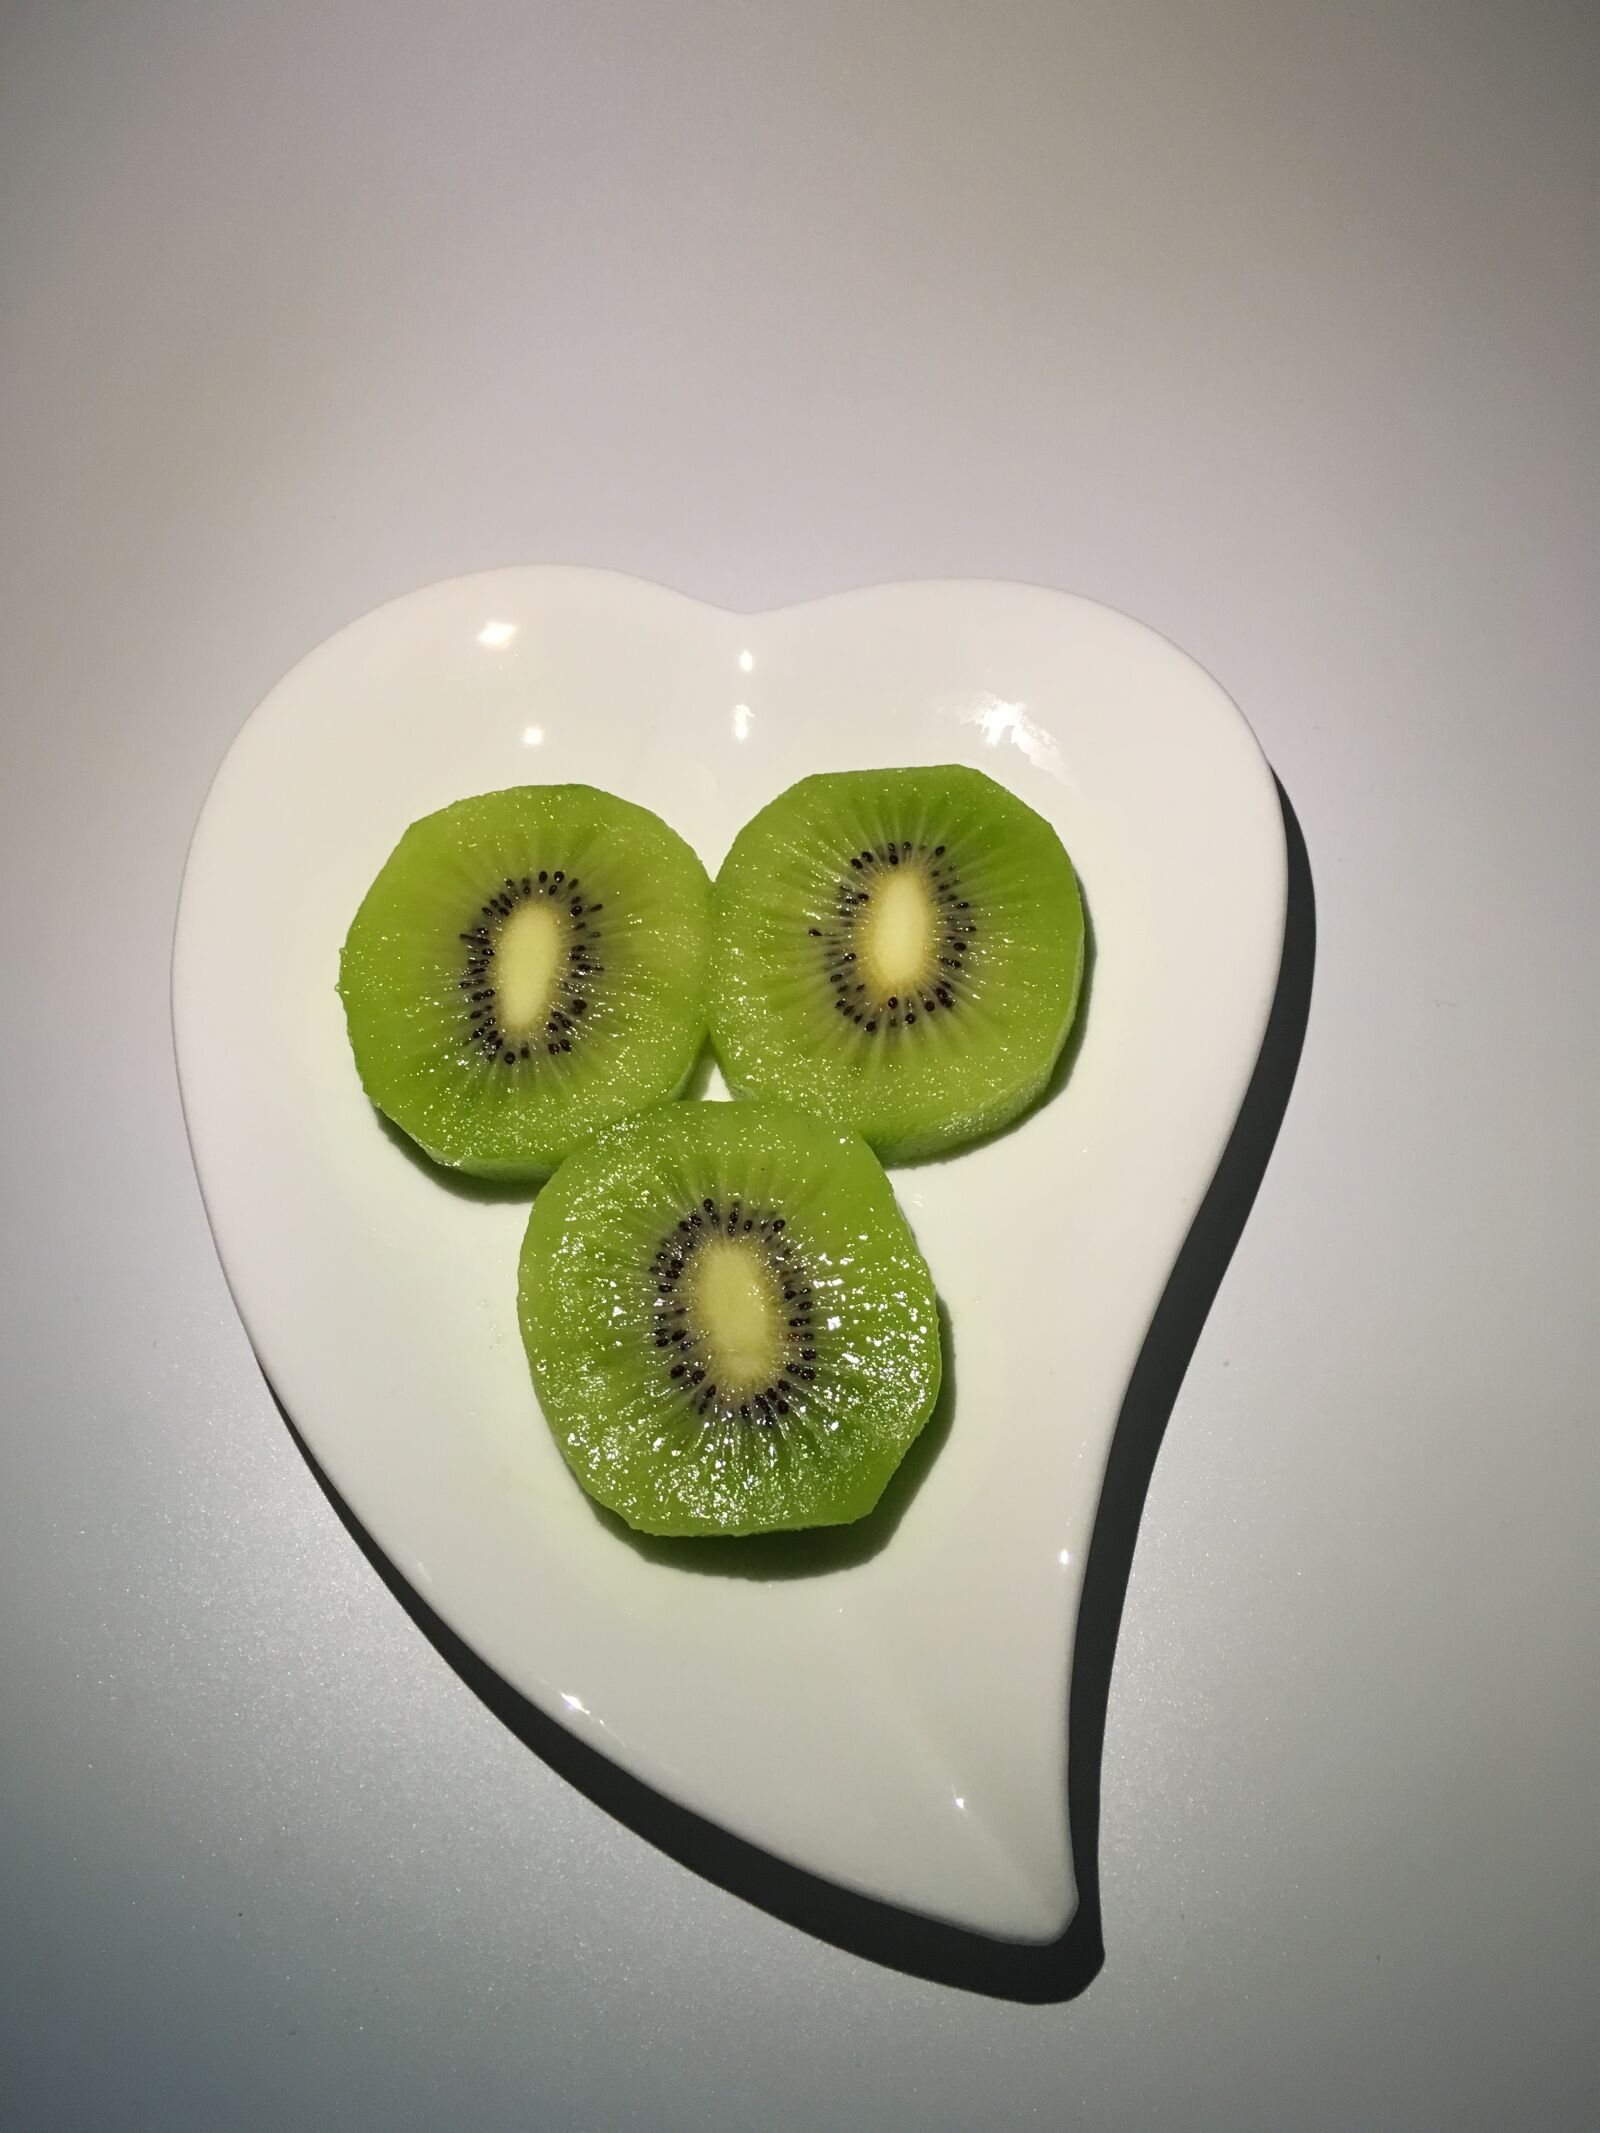 Apple iPhone SE sample photo. Kiwi, kiwi slices, heart-shaped photography